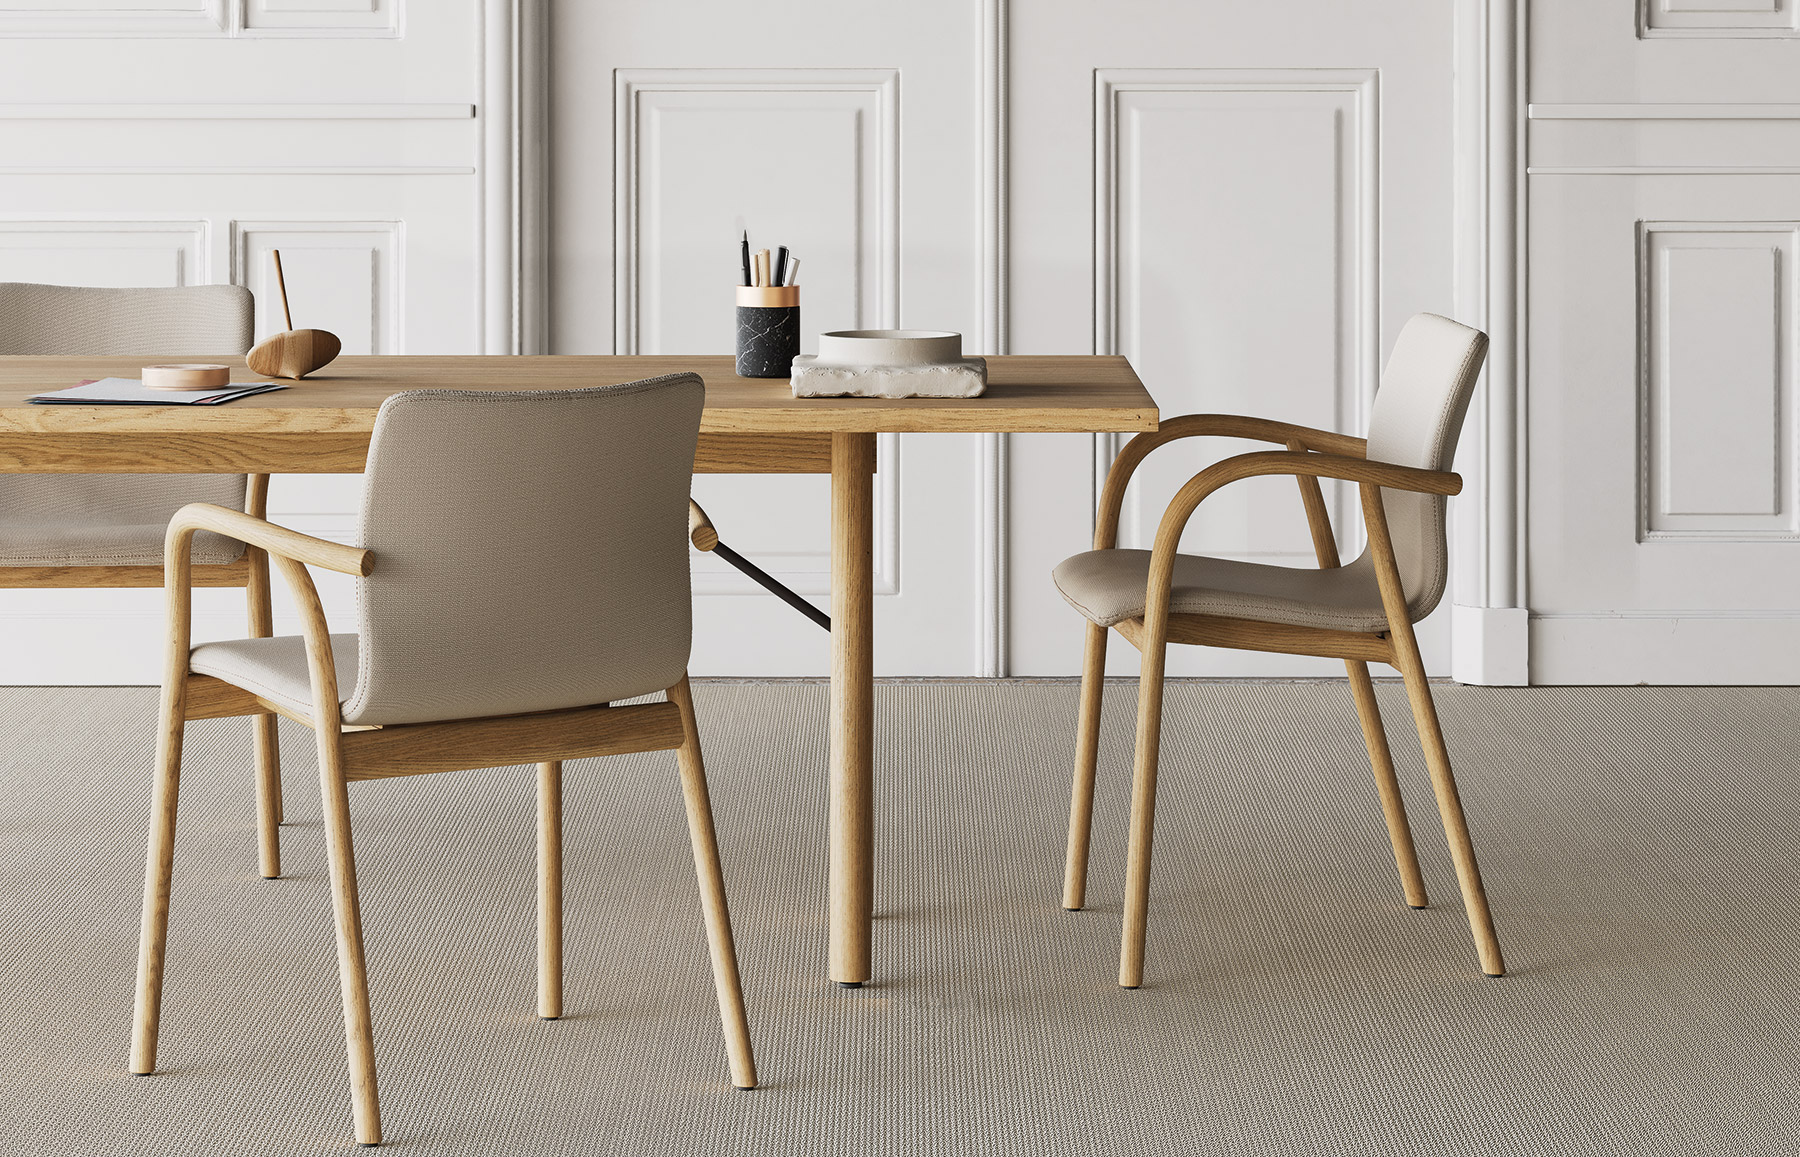 Naoto Fukasawa diseña para Kettal una colección de sillas y escritorios de madera maciza con un enfoque poco común en los entornos de oficina